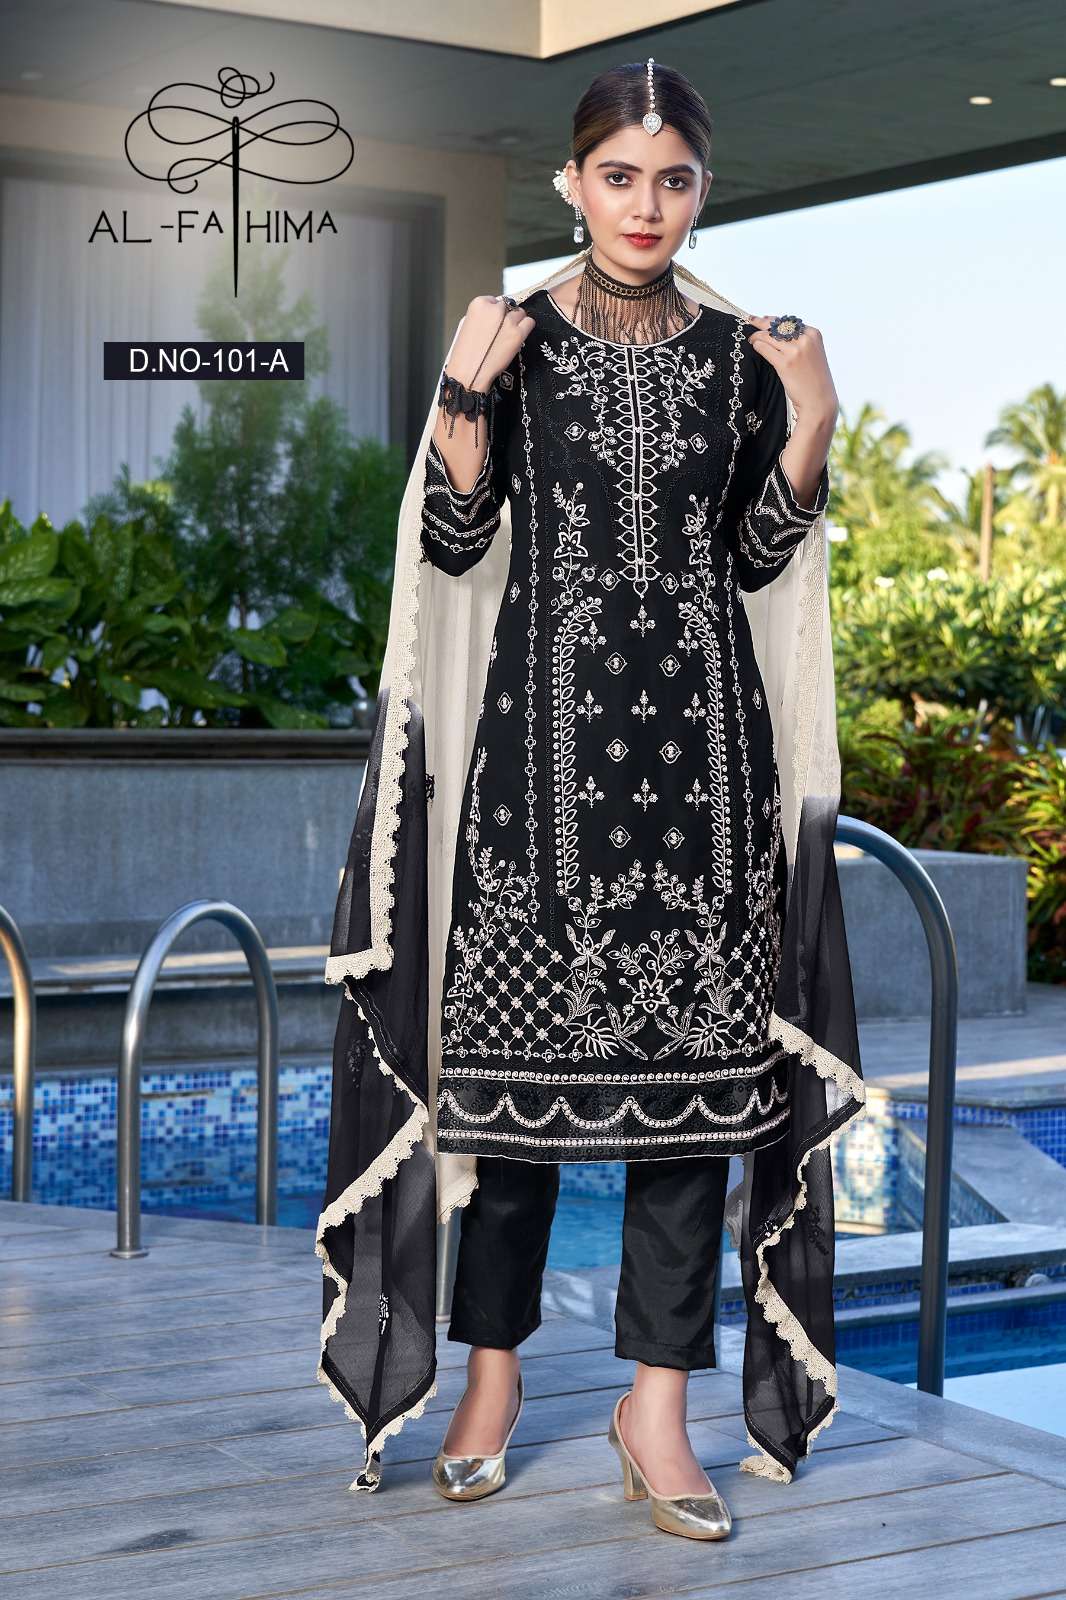 al fathima afreen no 101 georgatte innovative look salwar suit cataloug